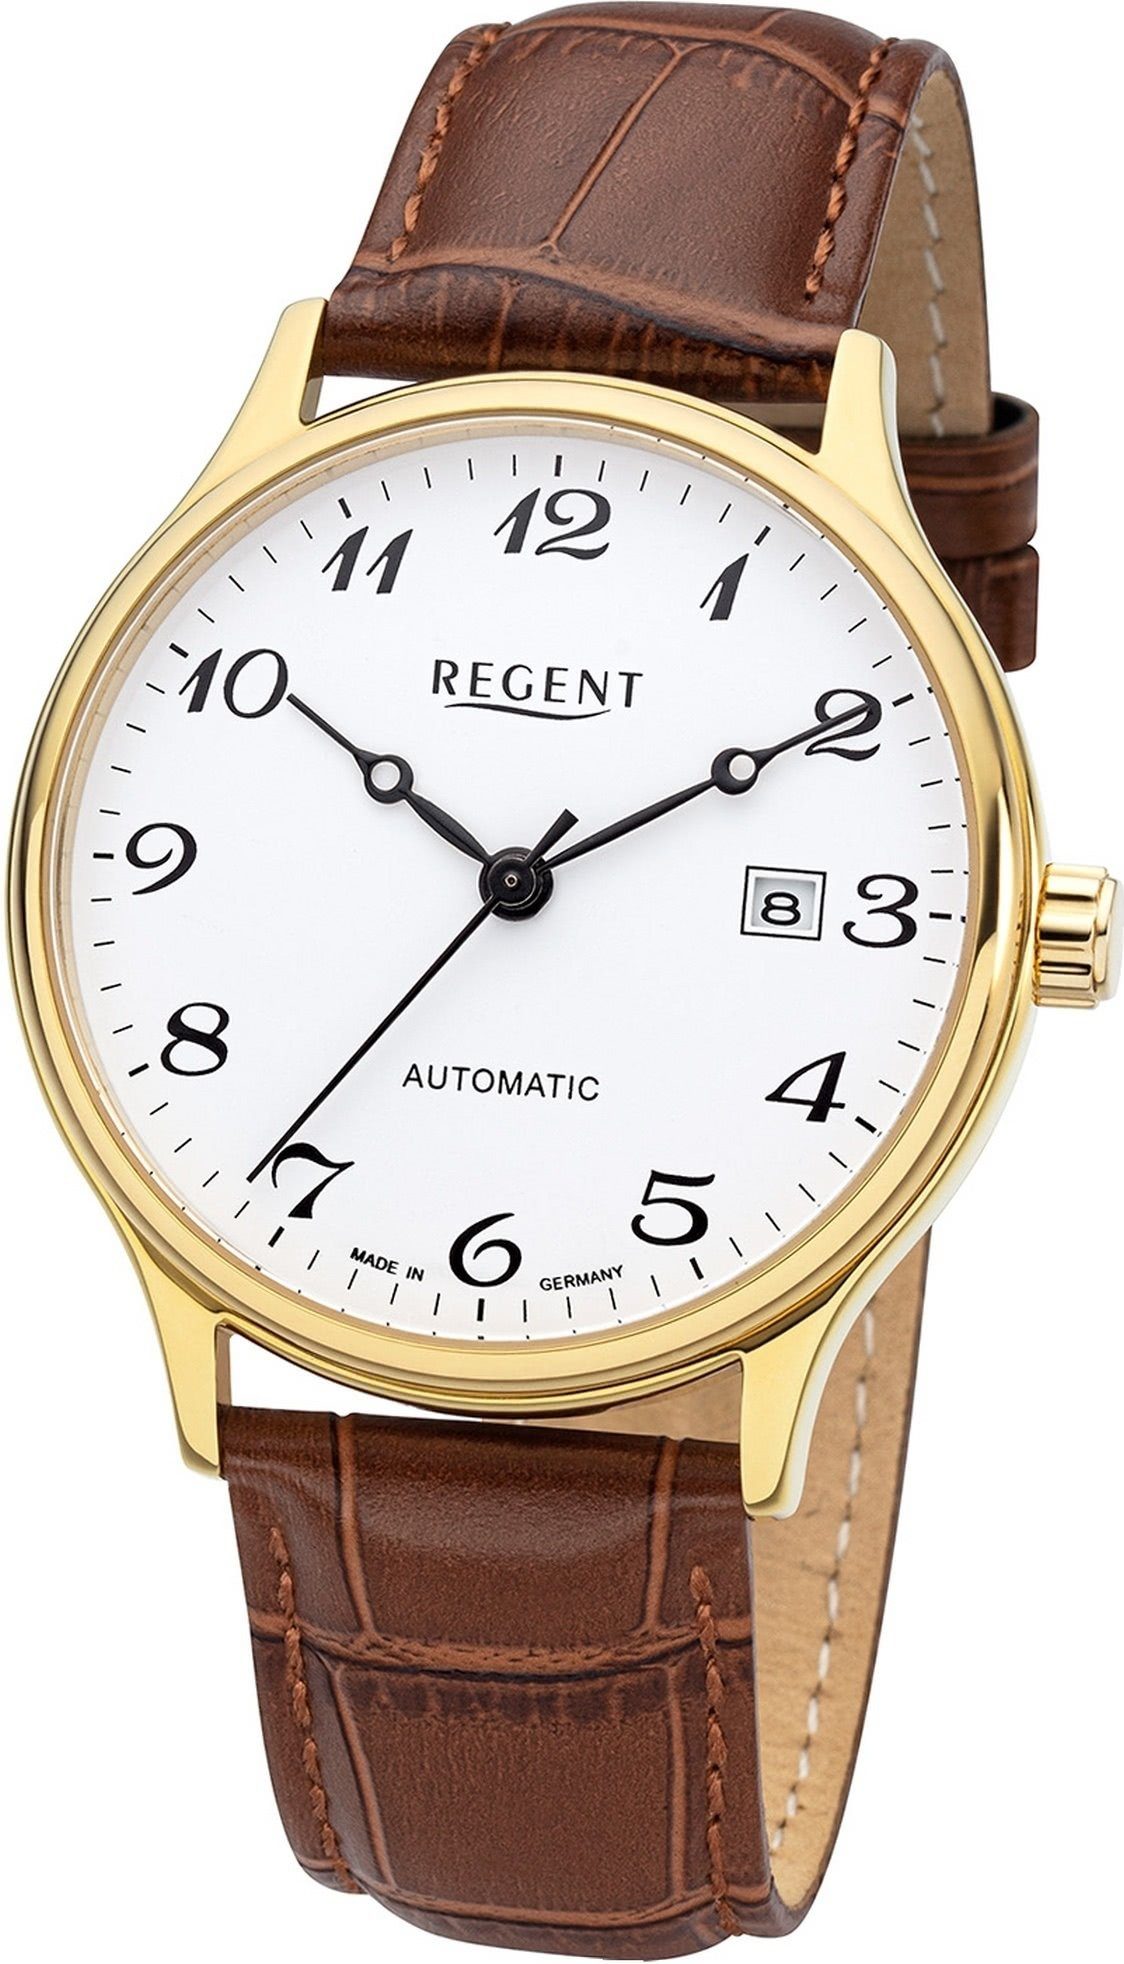 Regent Quarzuhr Analog, rundes Gehäuse, groß (ca. 40mm) Regent braun, Herren Herrenuhr Armbanduhr Lederbandarmband